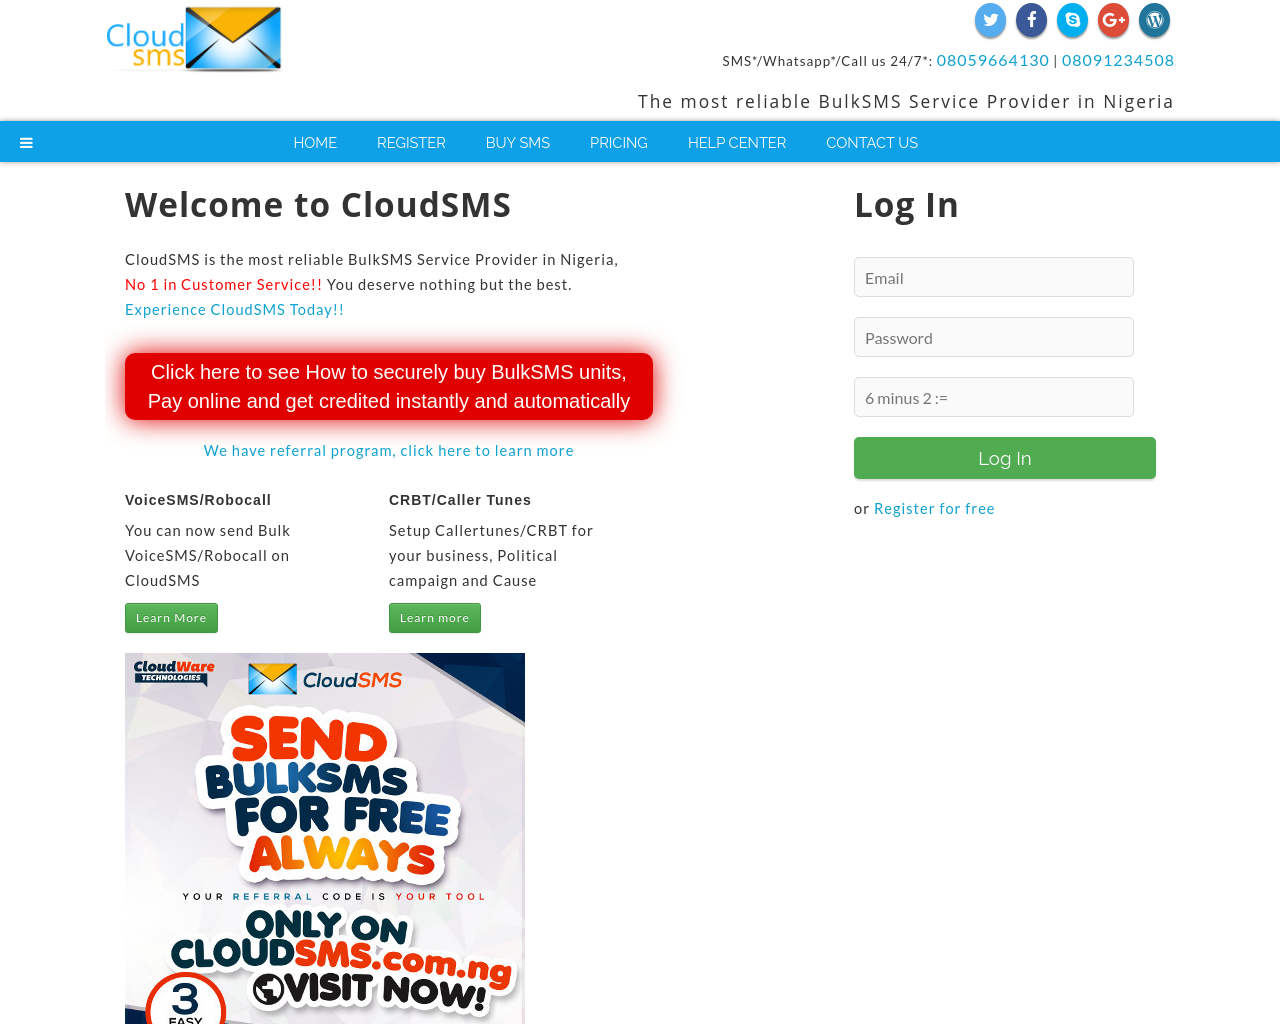 cloudsms.com.ng